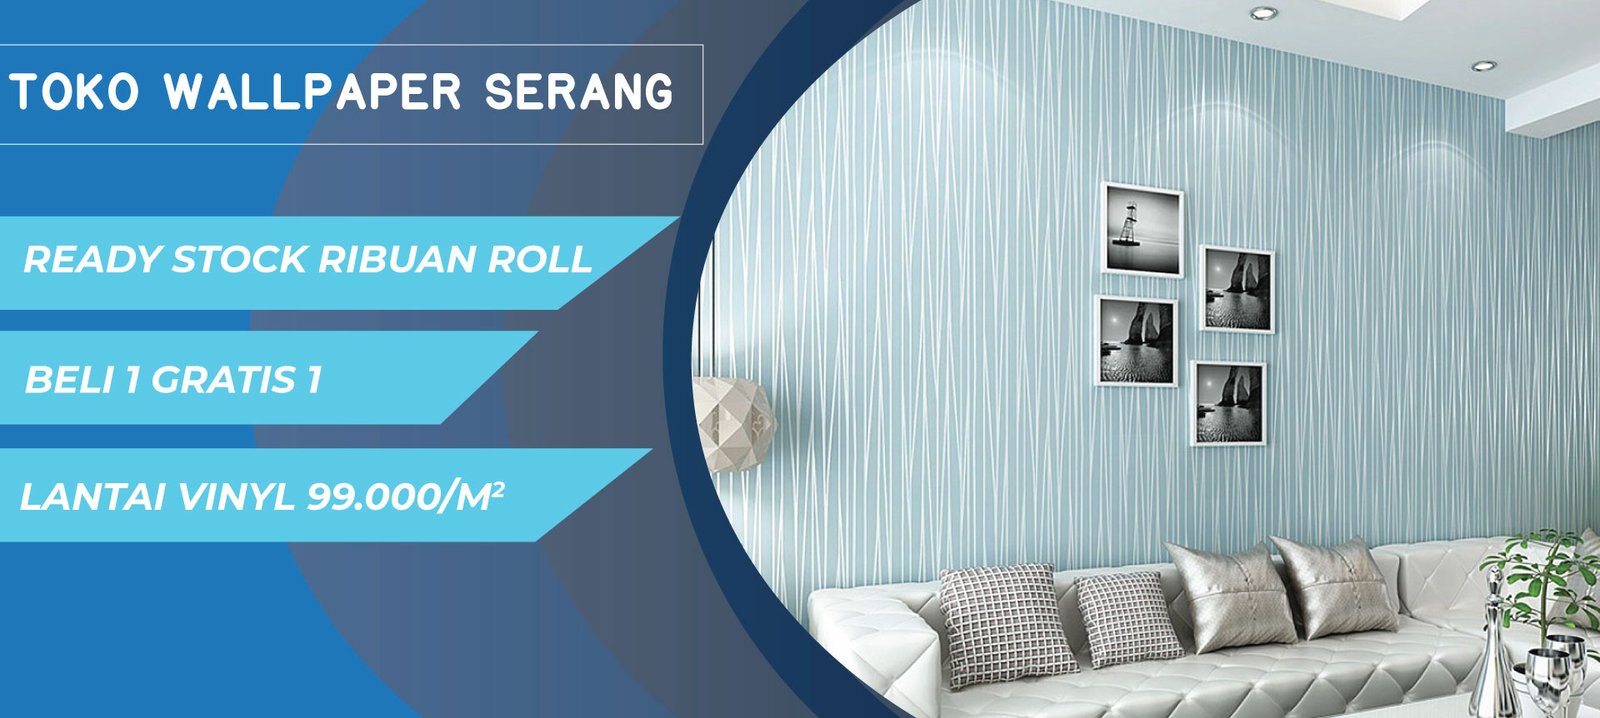 Toko wallpaper dinding murah - Geraiwallpaper - Tokowallpaperdindingbekasi  - www.geraiwallpaper.com | LinkedIn